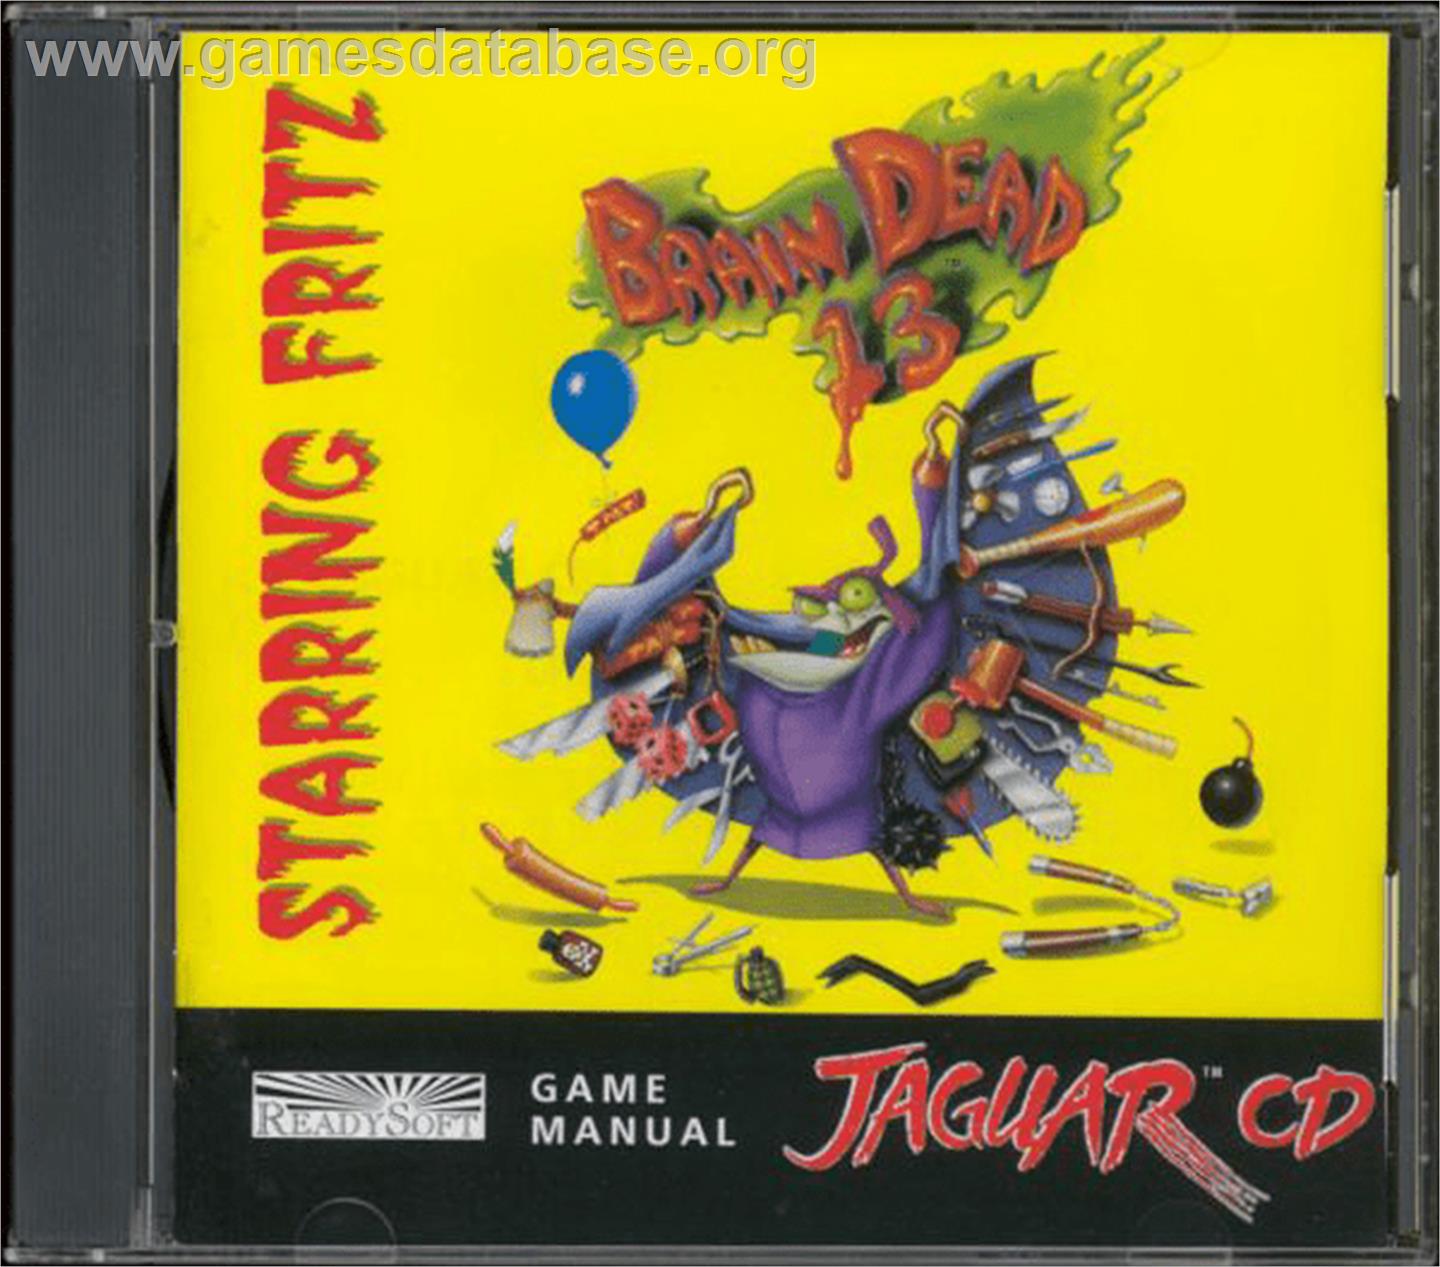 BrainDead 13 - Atari Jaguar CD - Artwork - Box